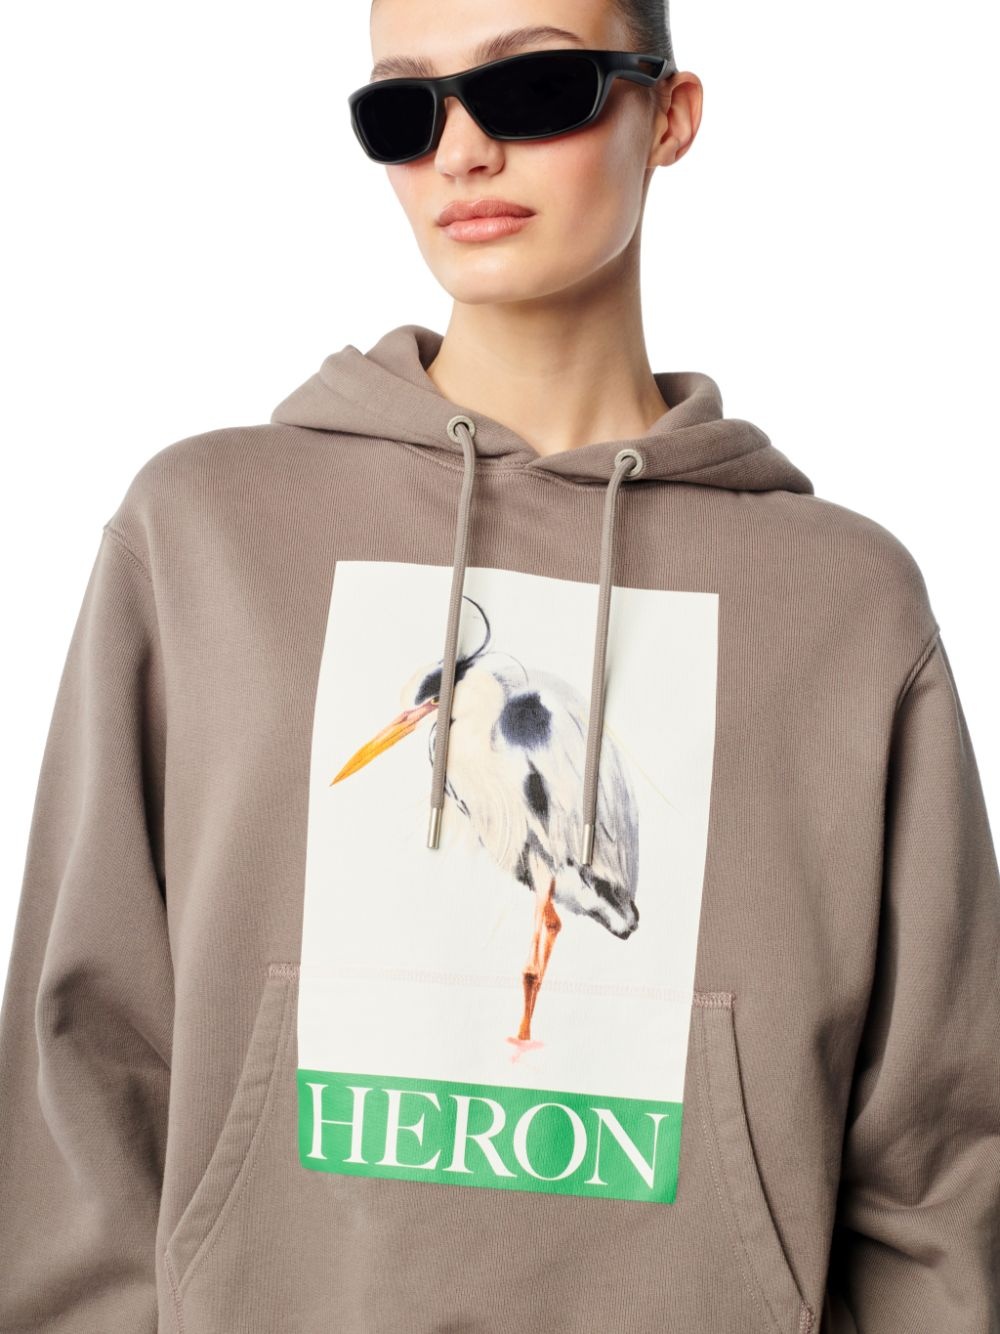 Heron Bird Painted Hoodie - 5